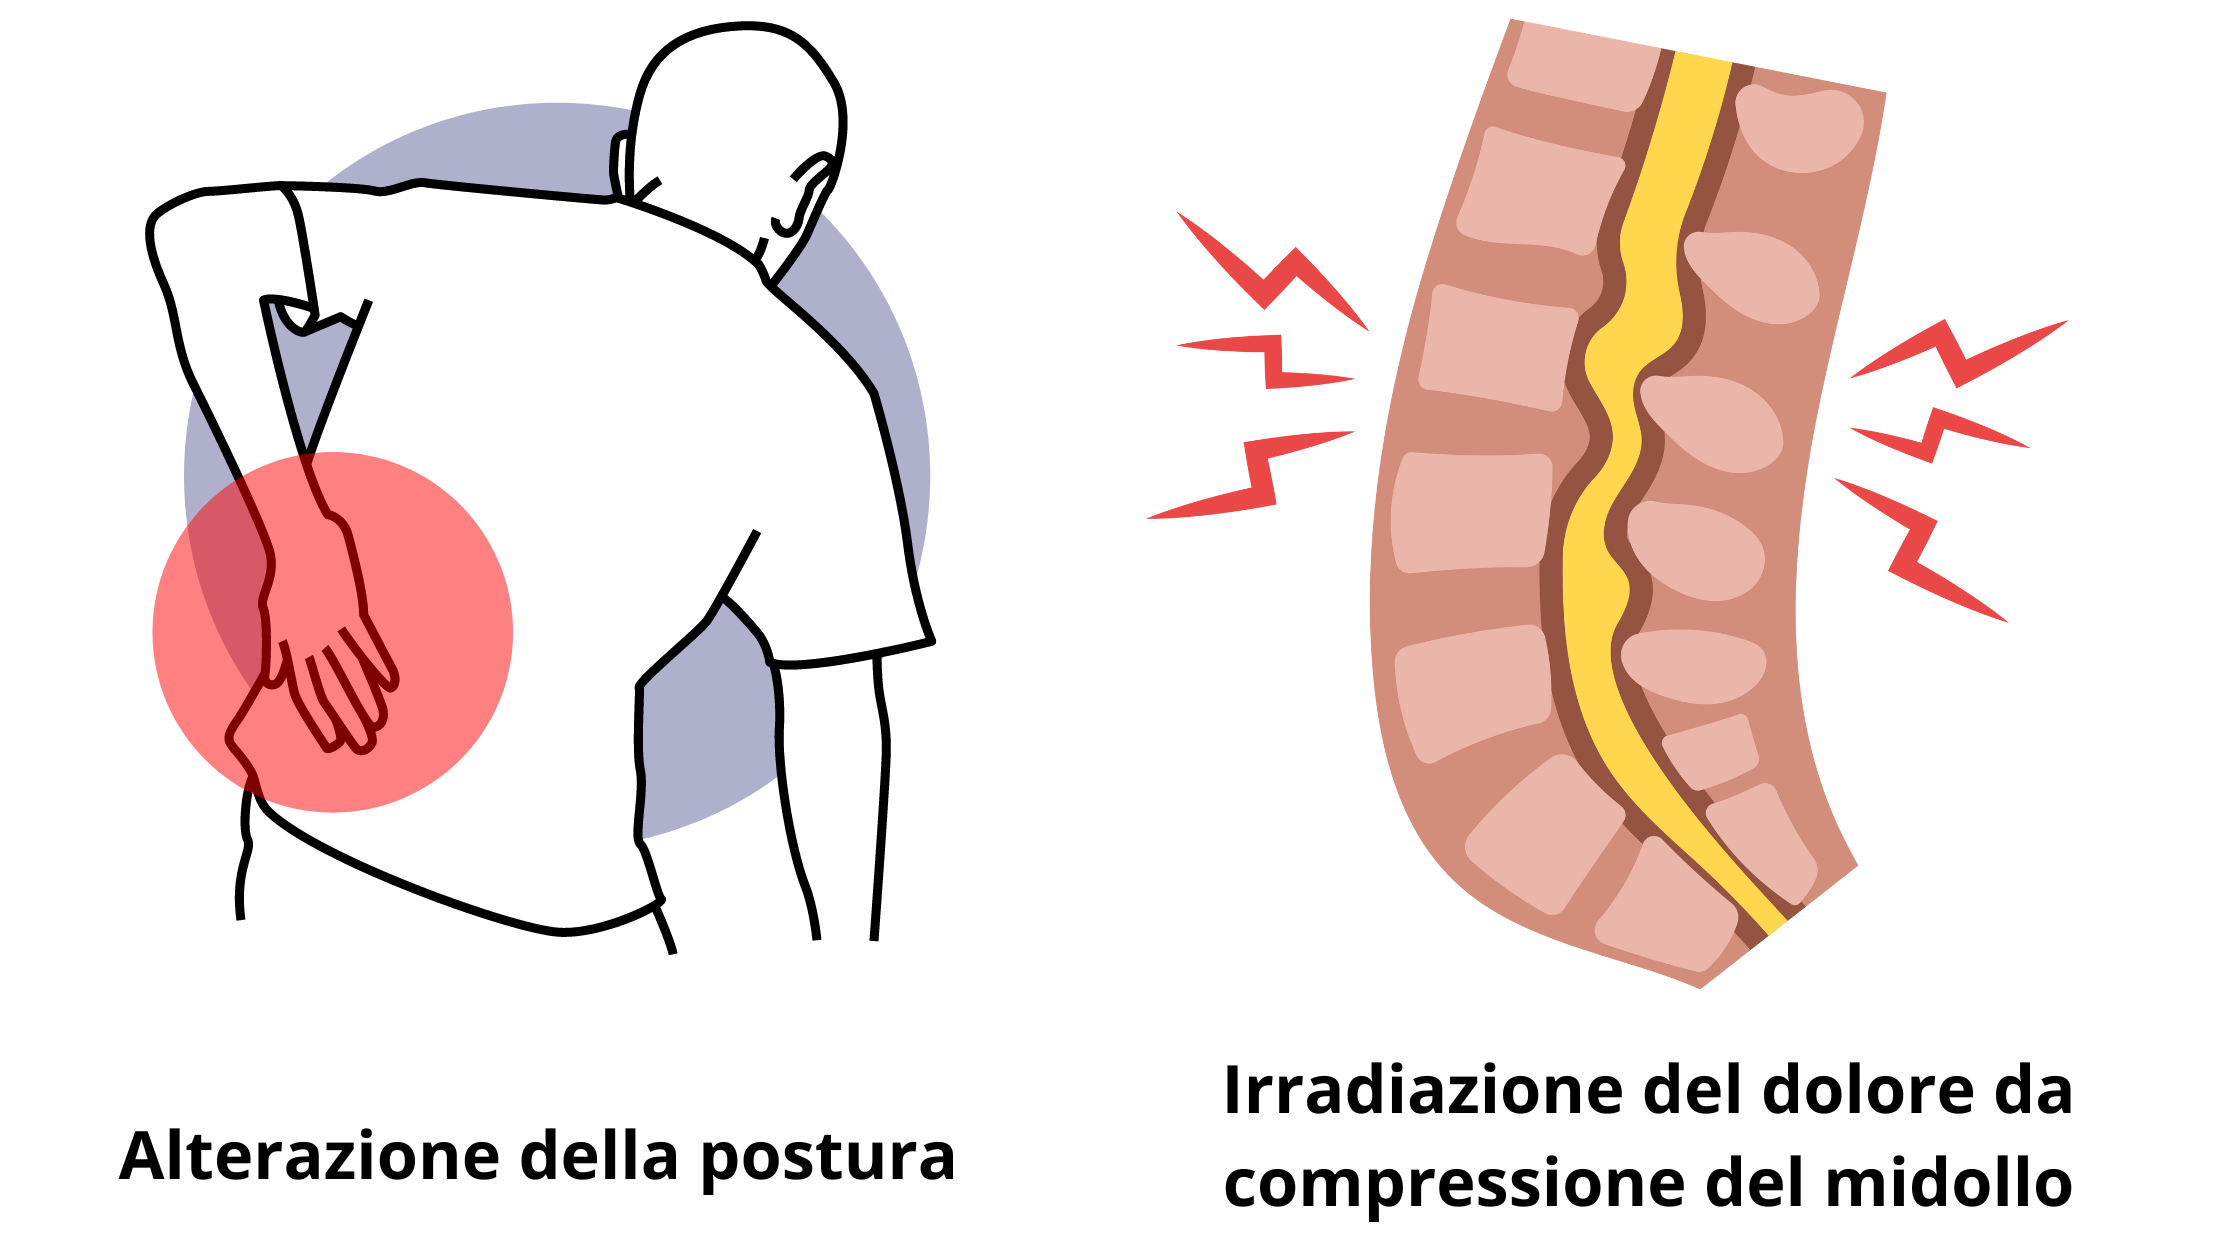 Alterazione della postura ed irradiazione del dolore da compressione del midollo spinale tra i sintomi da spondilolistesi